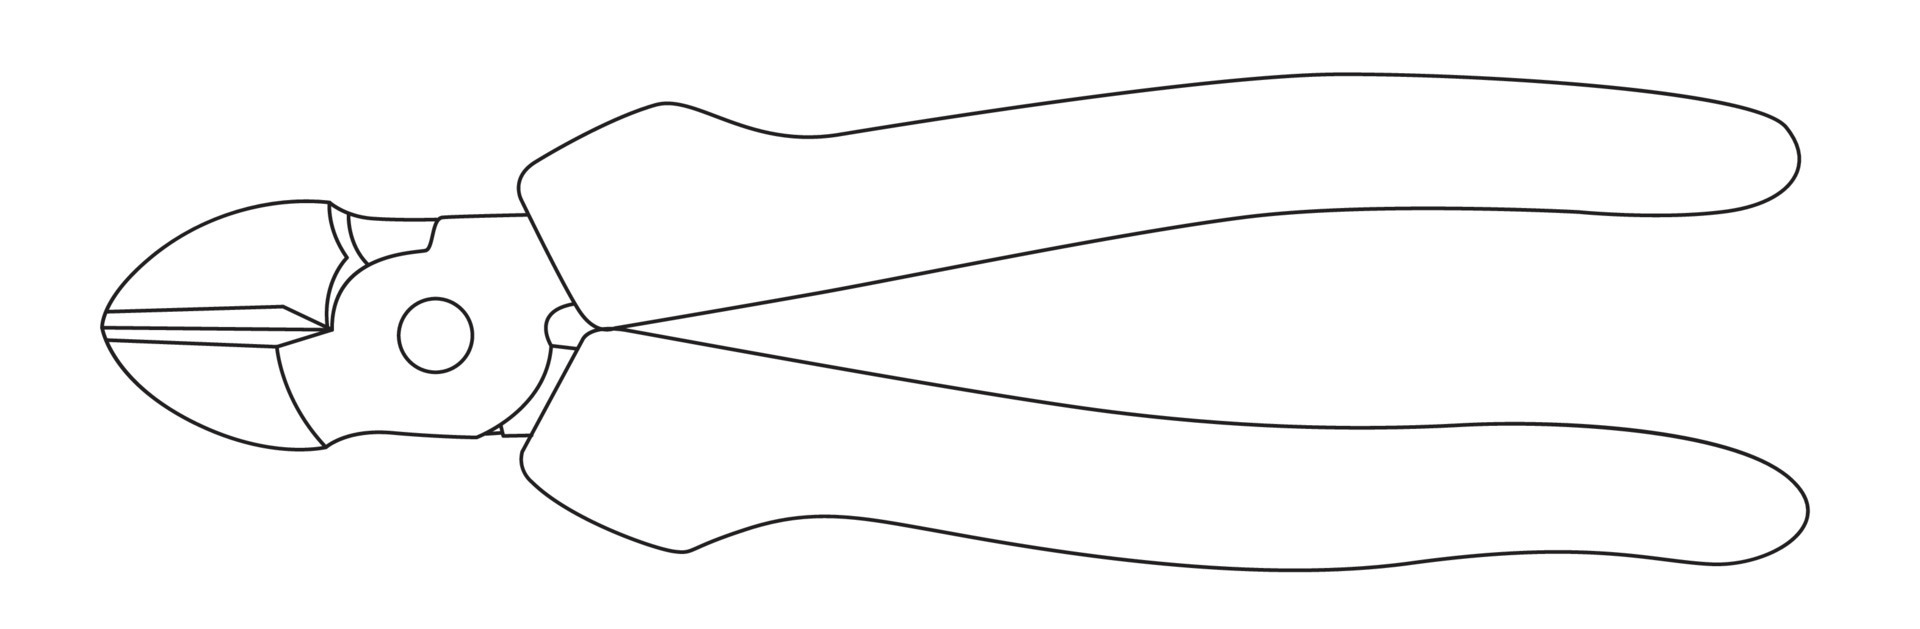 Vector Drawing In Doodle Style Pliers Construction Tool Hand  Workvektorgrafik och fler bilder på Arbeta  iStock